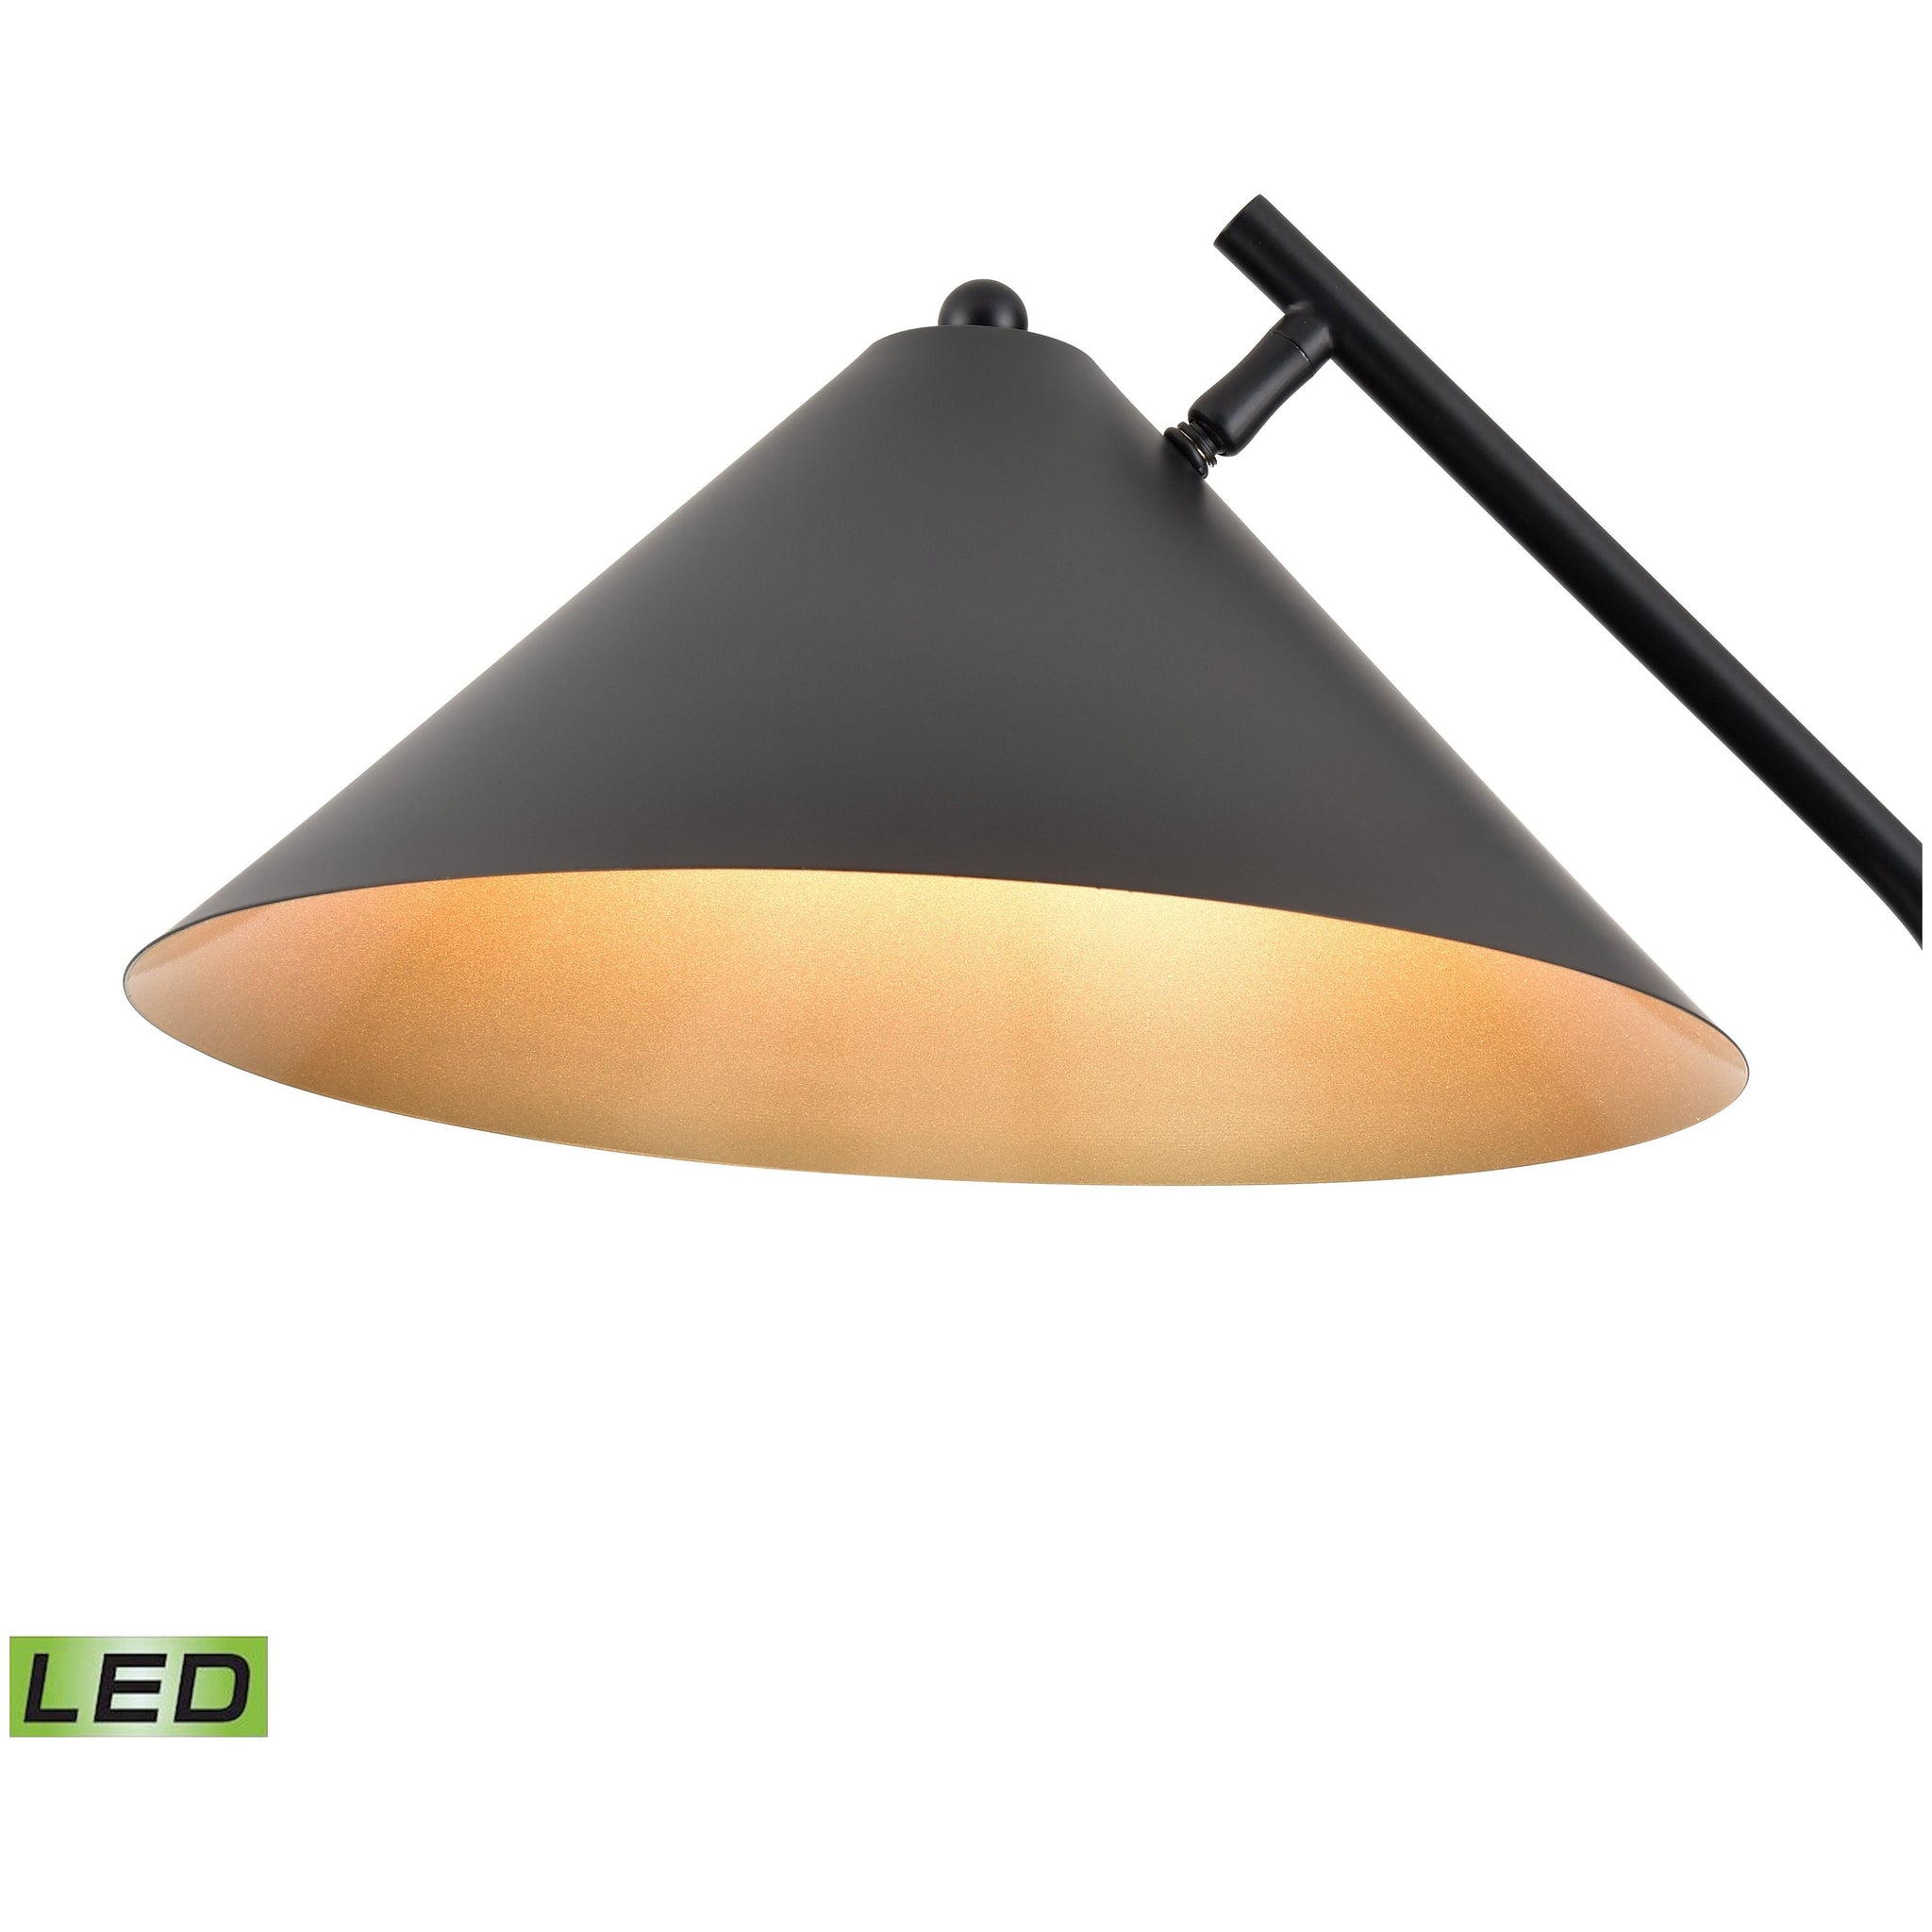 Timon 67" High 1-Light Floor Lamp